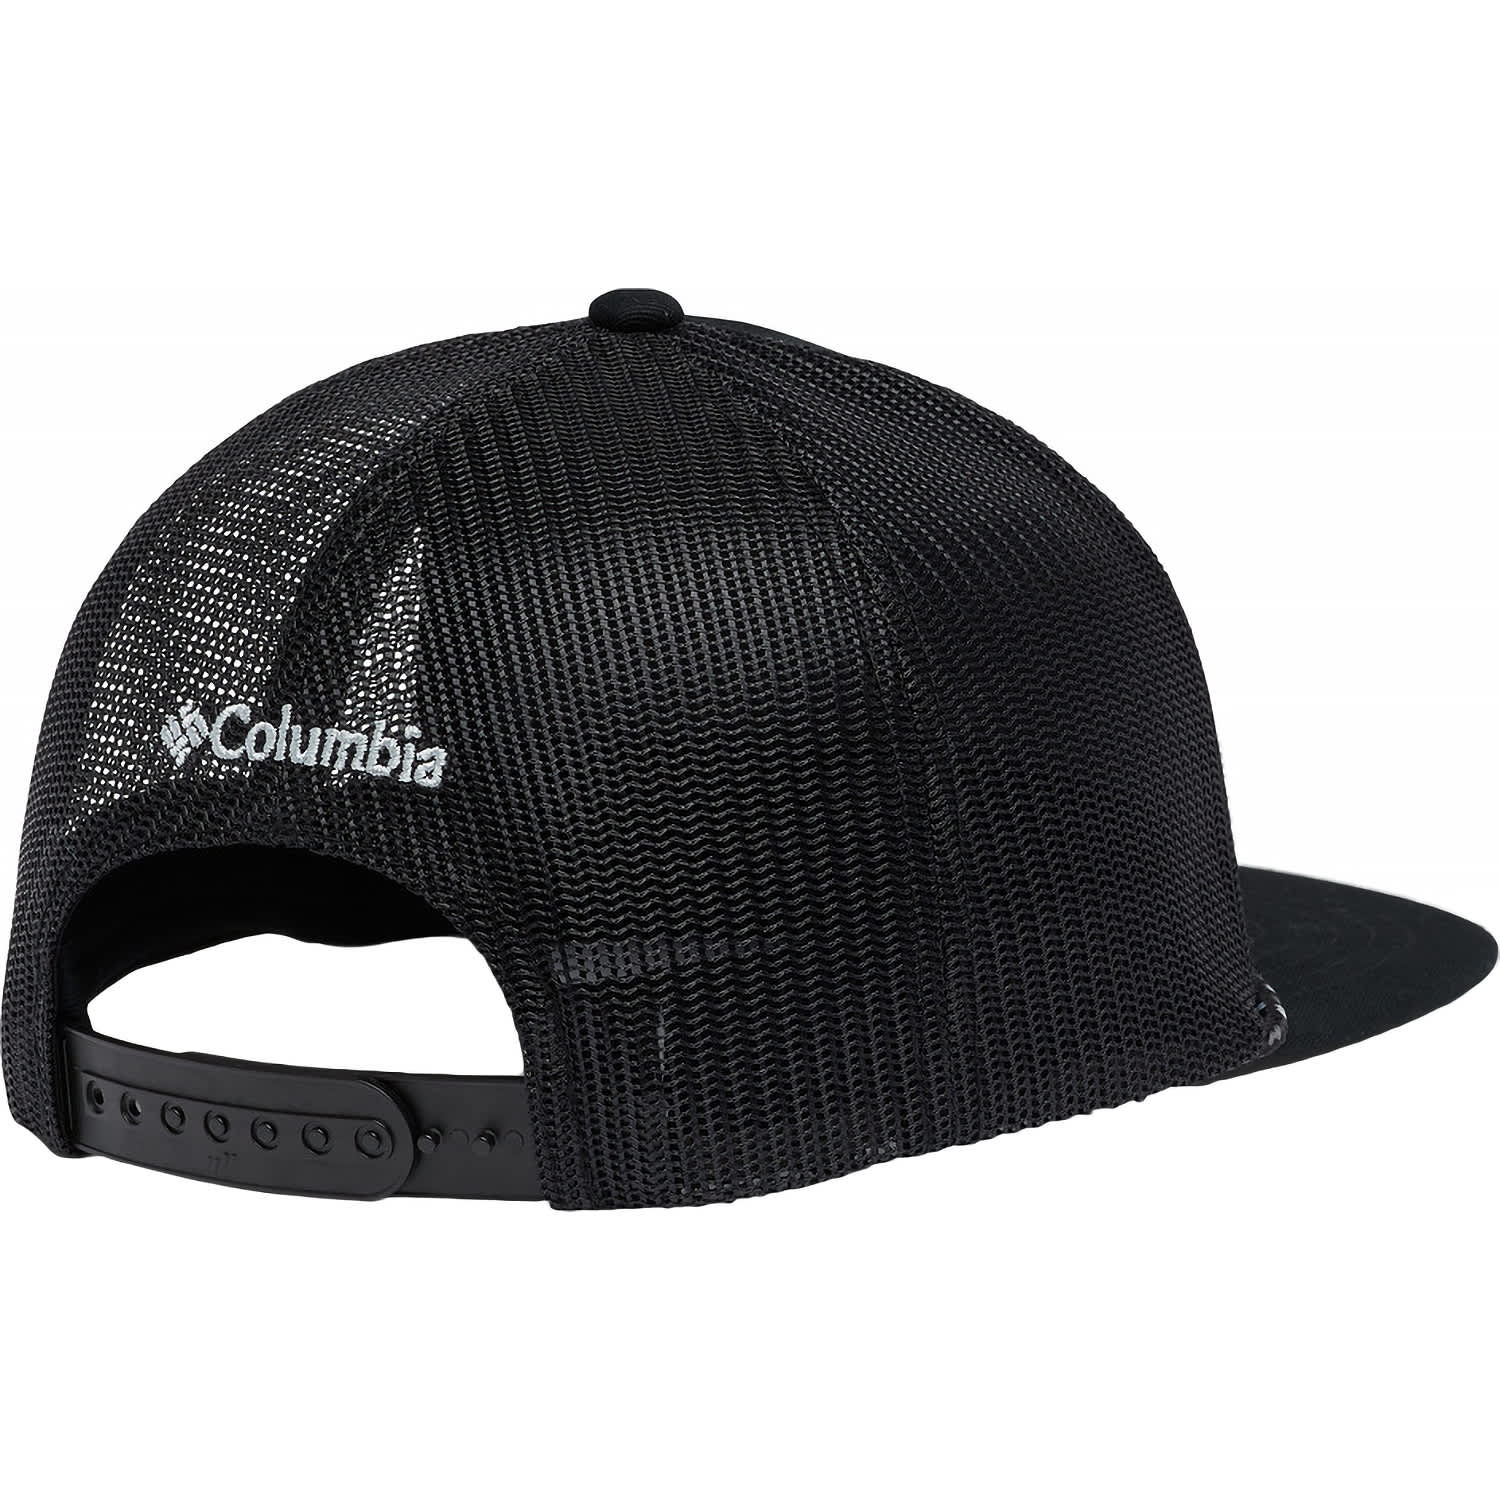 Columbia® Men's Flat Brim Snapback Cap